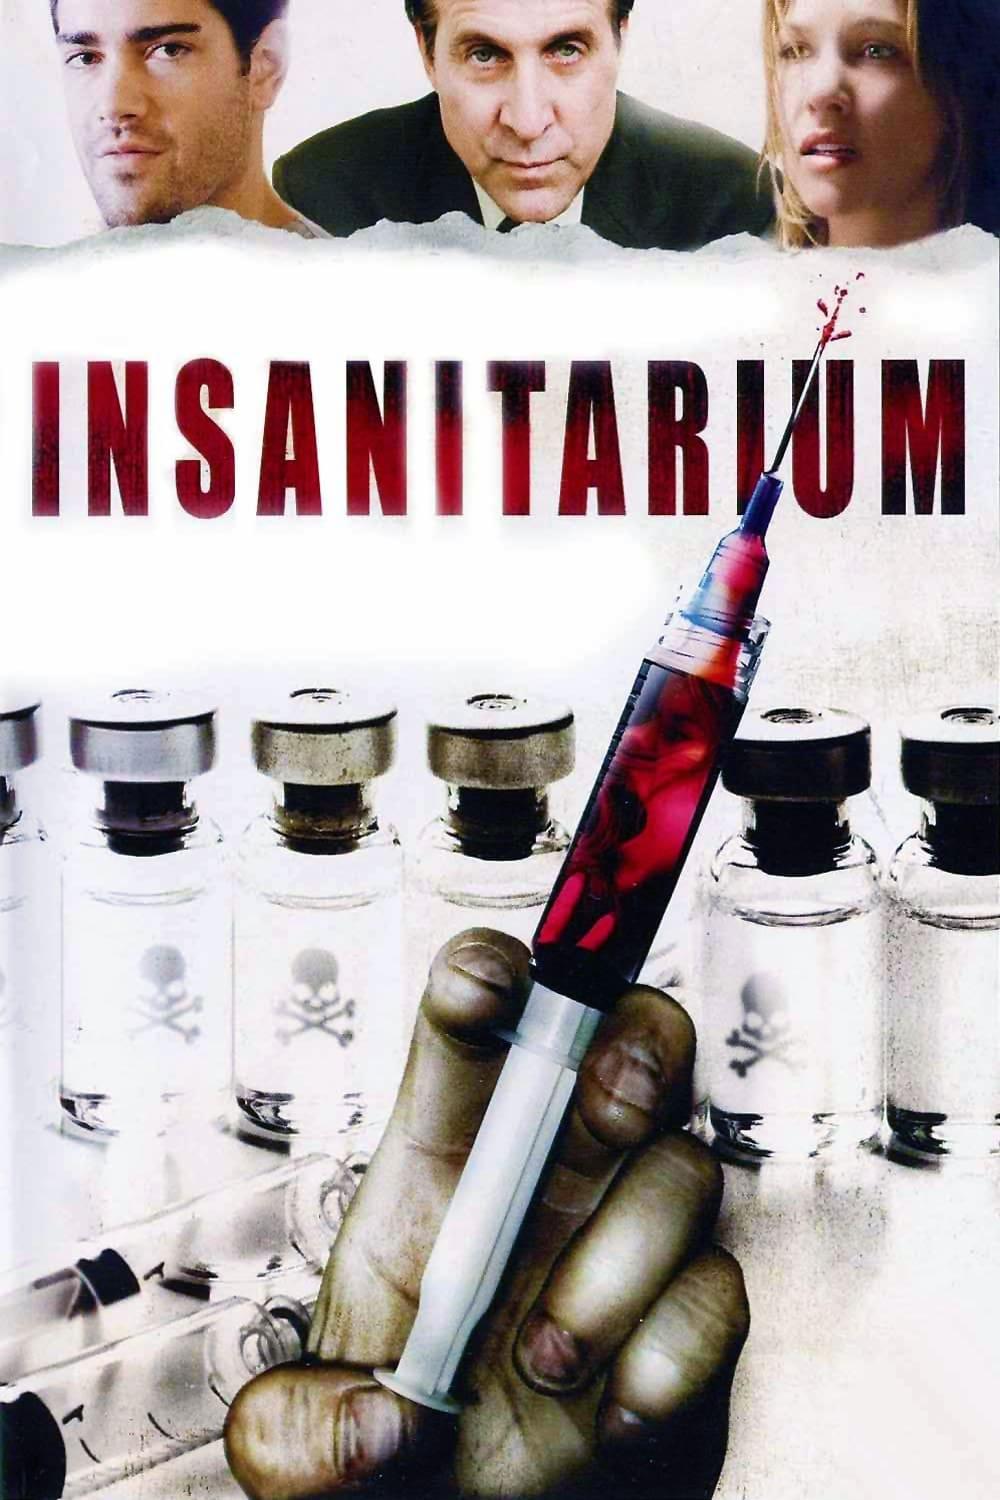 Insanitarium poster